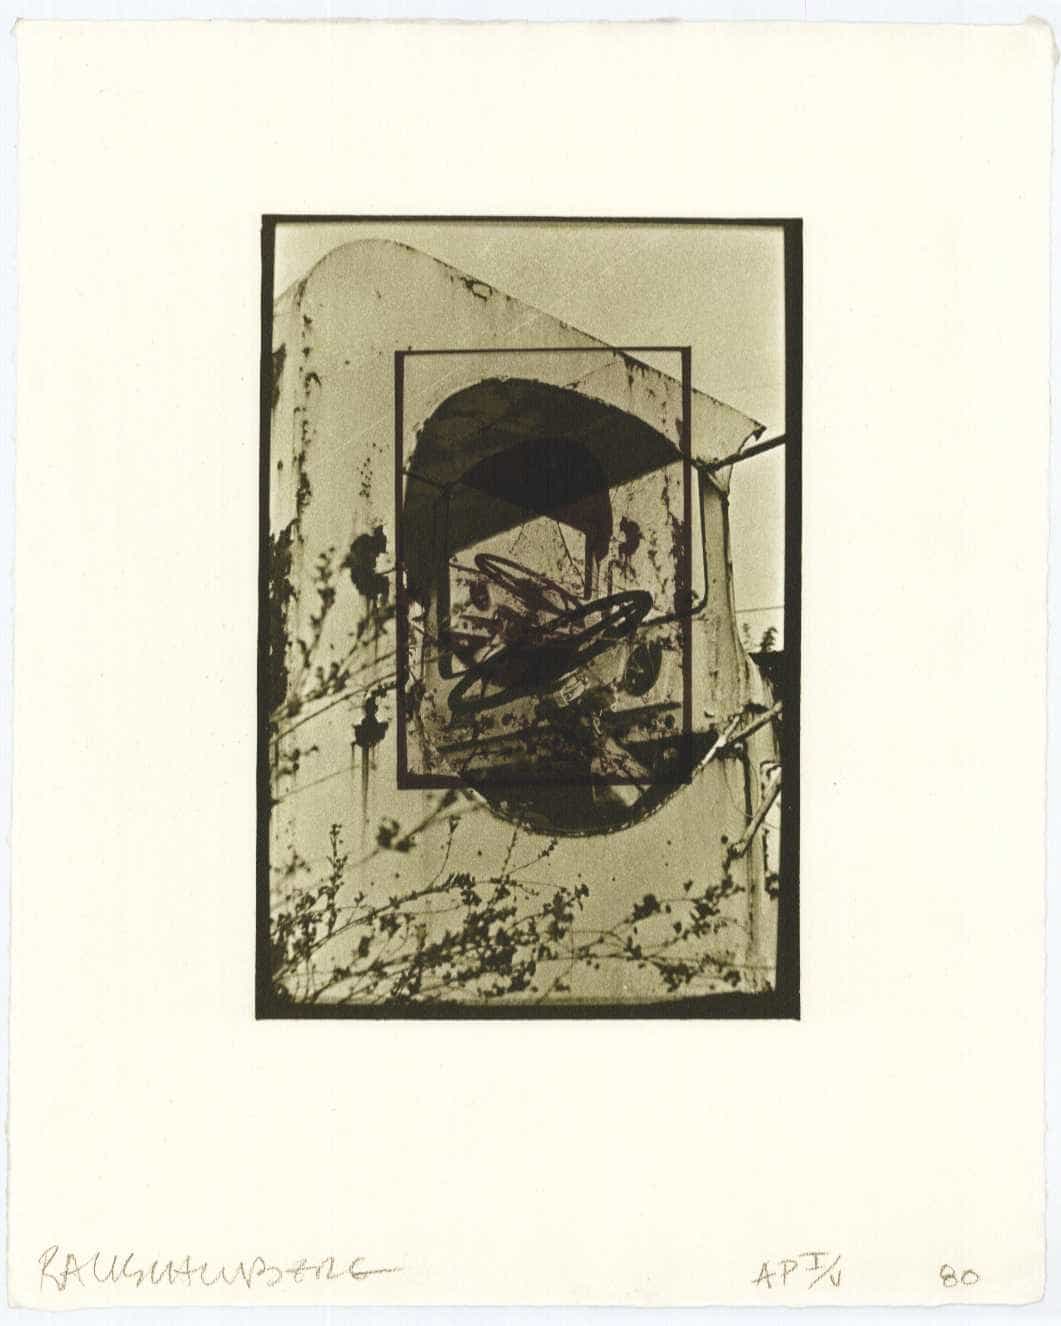 Robert Rauschenberg, White Pendulum, 1980